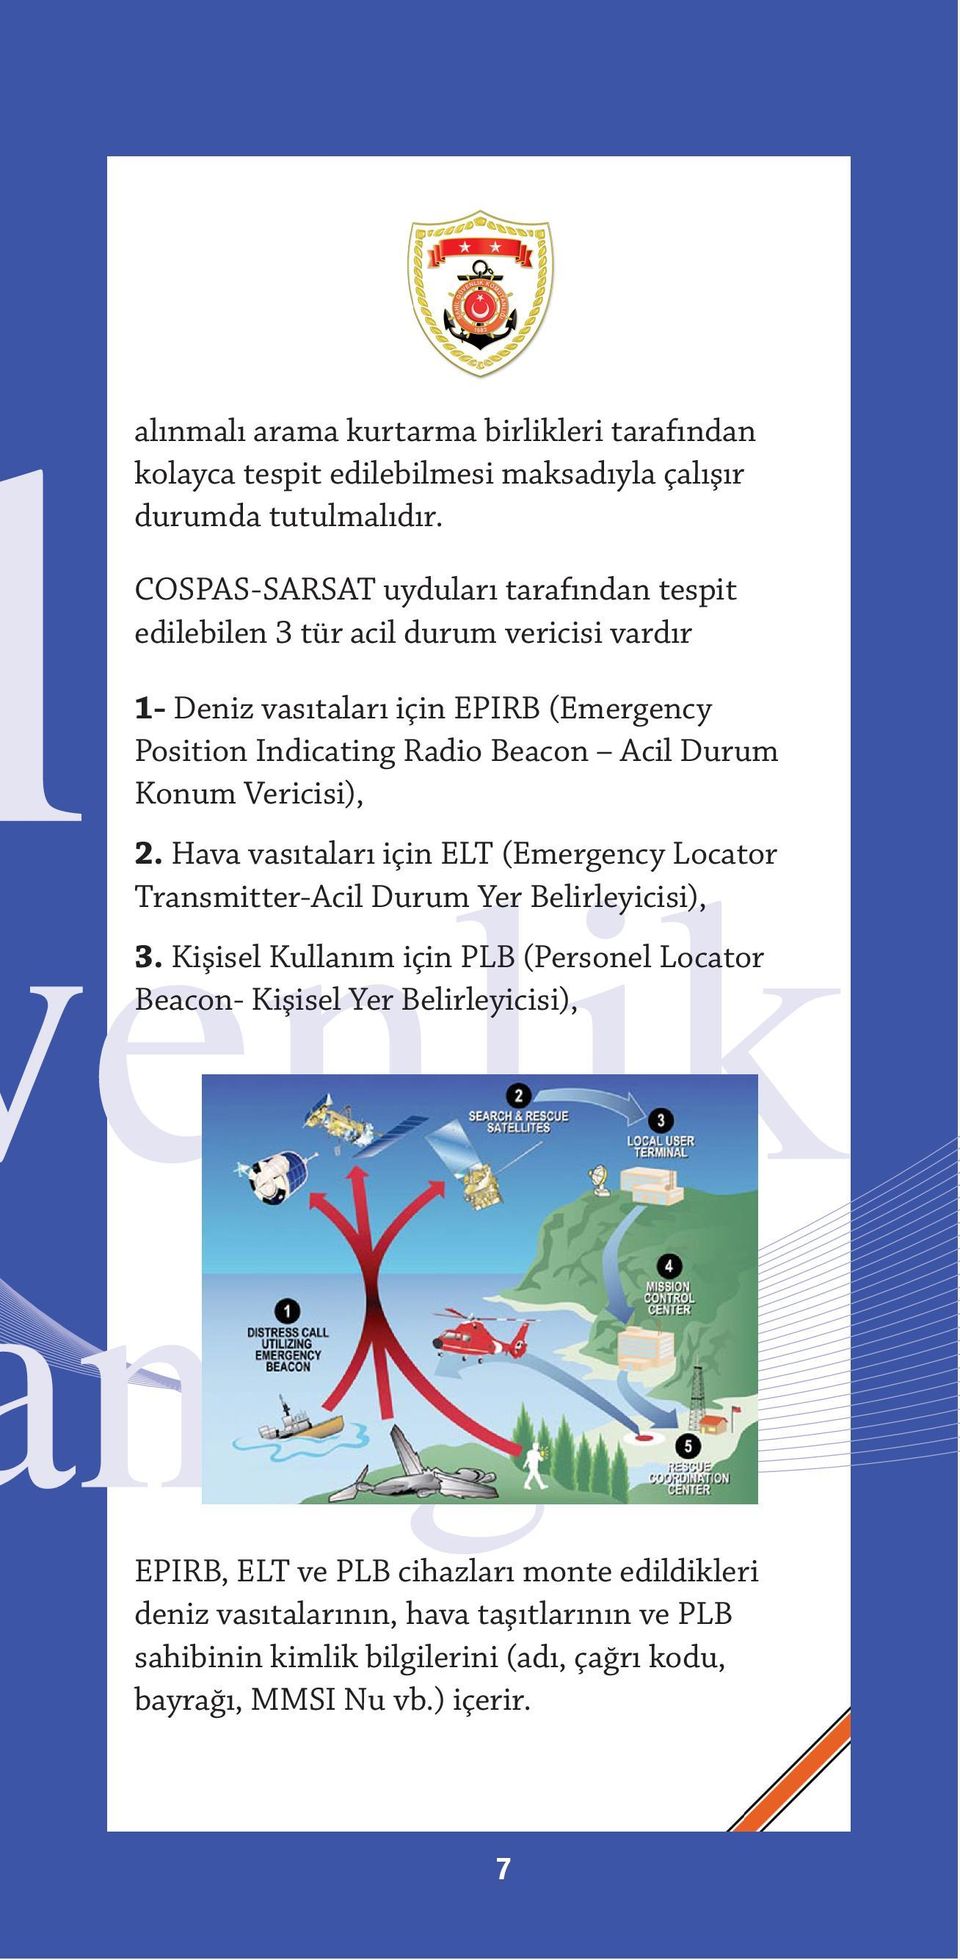 Acil Durum Konum Vericisi), 2. Hava vasıtaları için ELT (Emergency Locator Transmitter-Acil Durum Yer Belirleyicisi), 3.